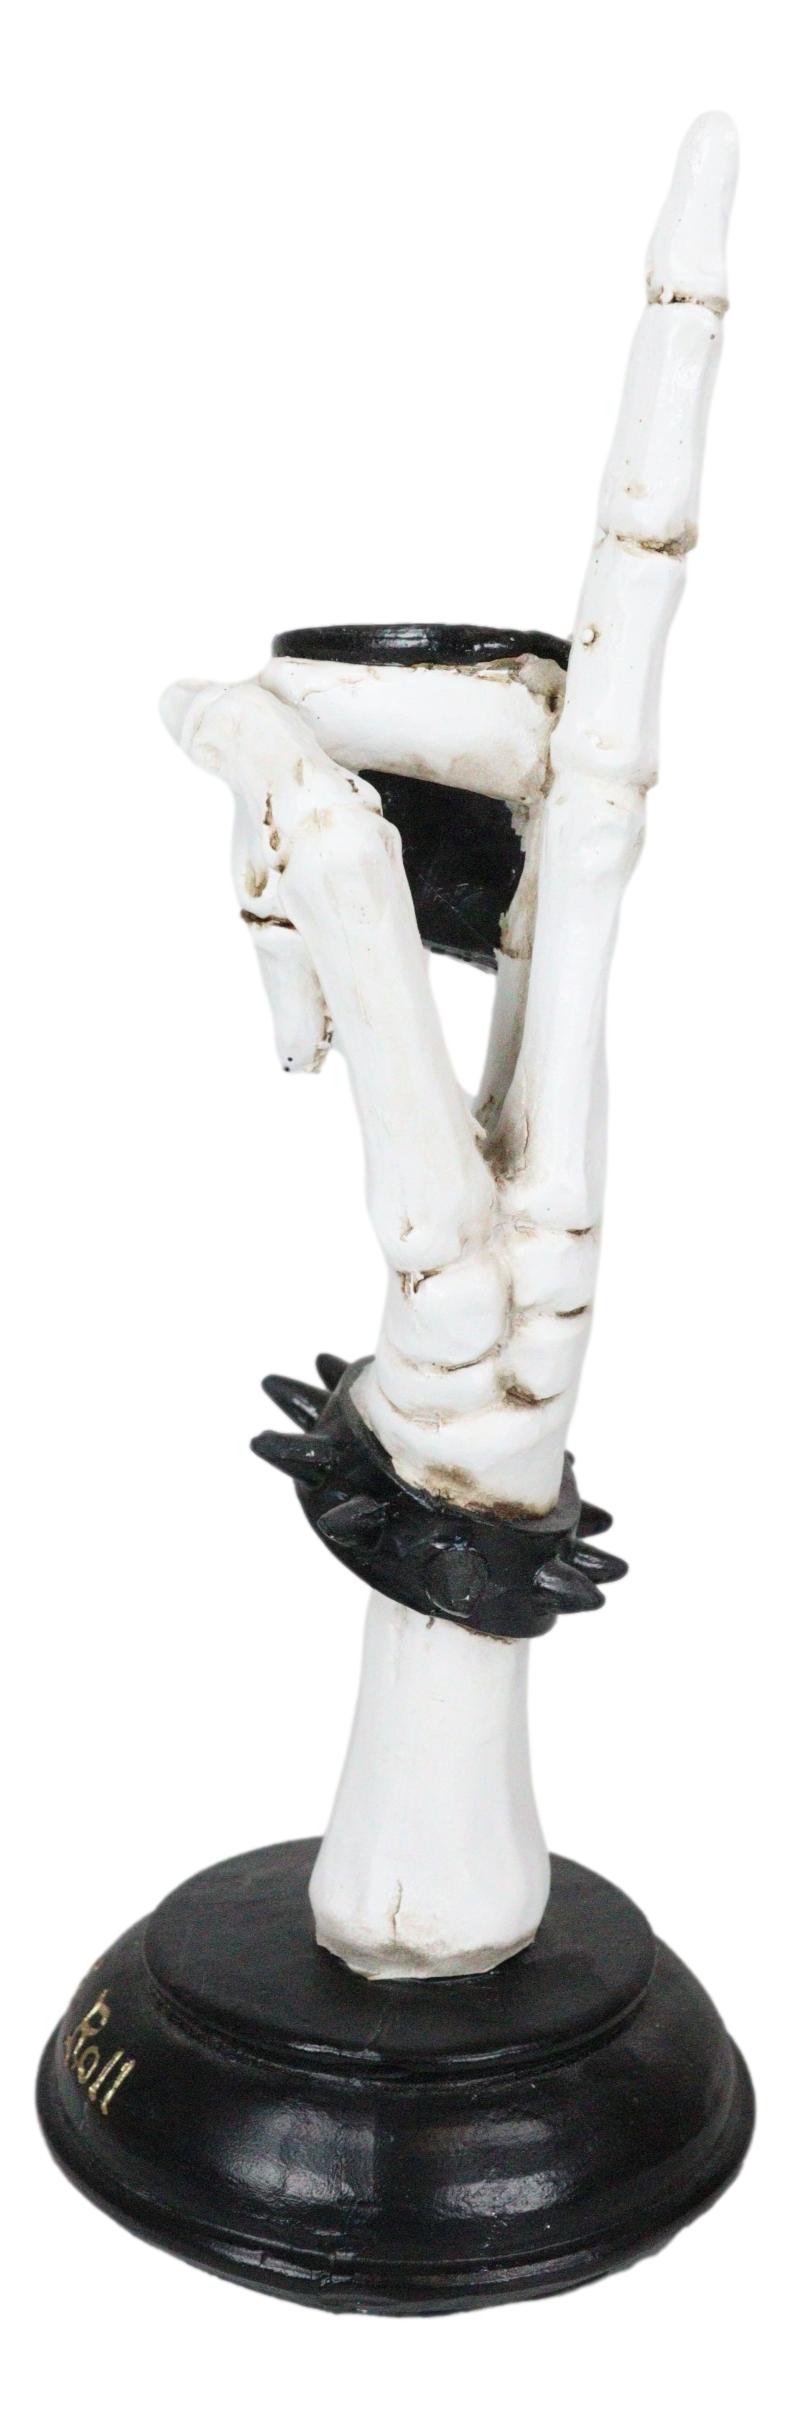 Gothic Hand Sign Skeleton Rock & Roll Spiked Bracelet Votive Candle Holder Decor